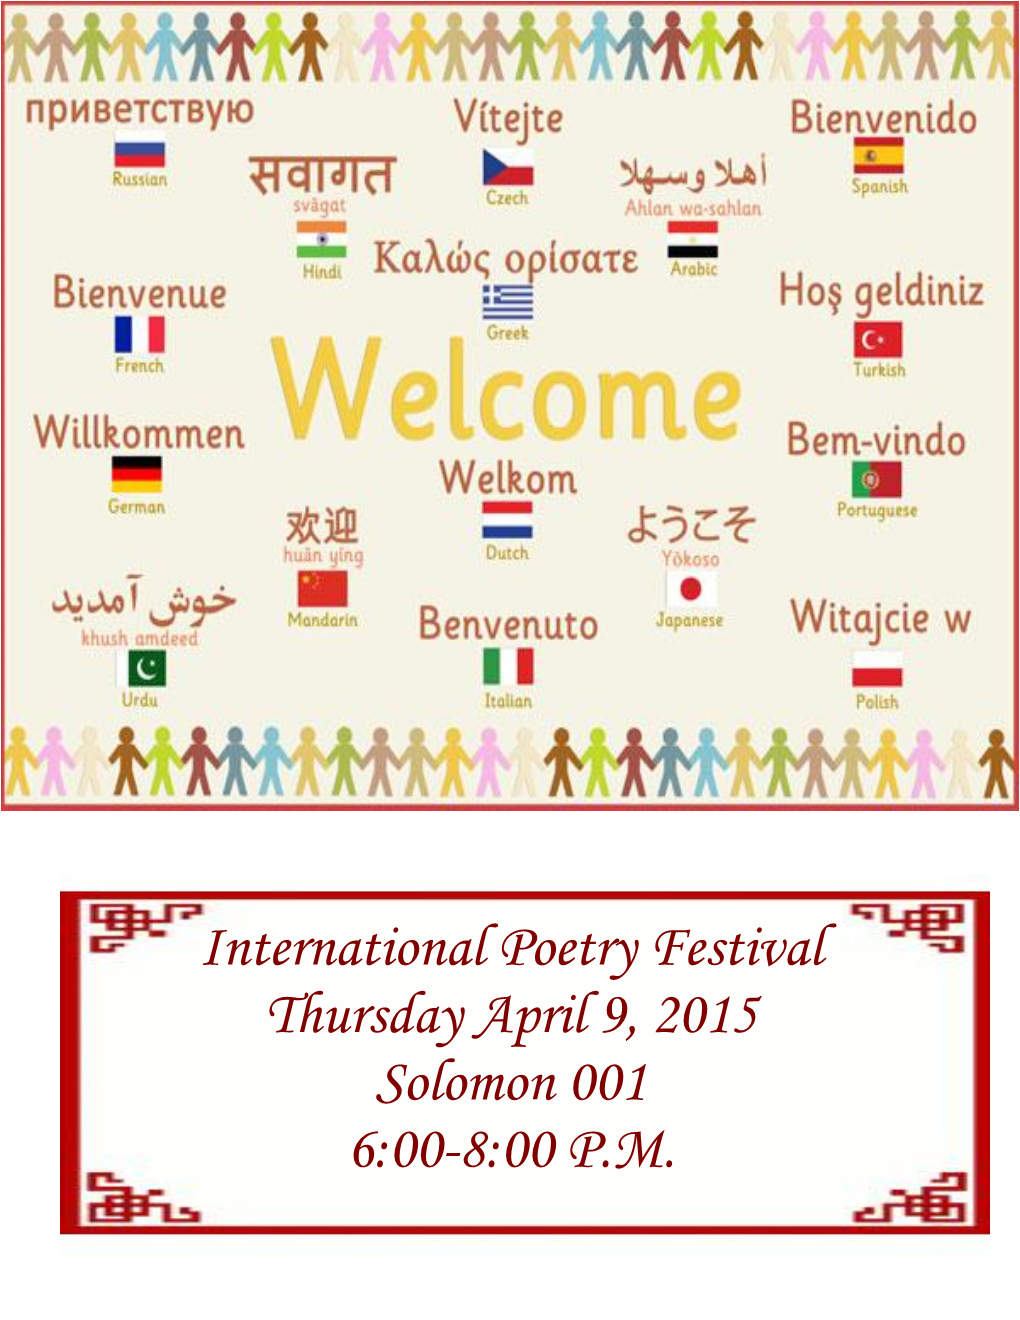 International Poetry Festival Thursday April 9, 2015 Solomon 001 6:00-8:00 P.M